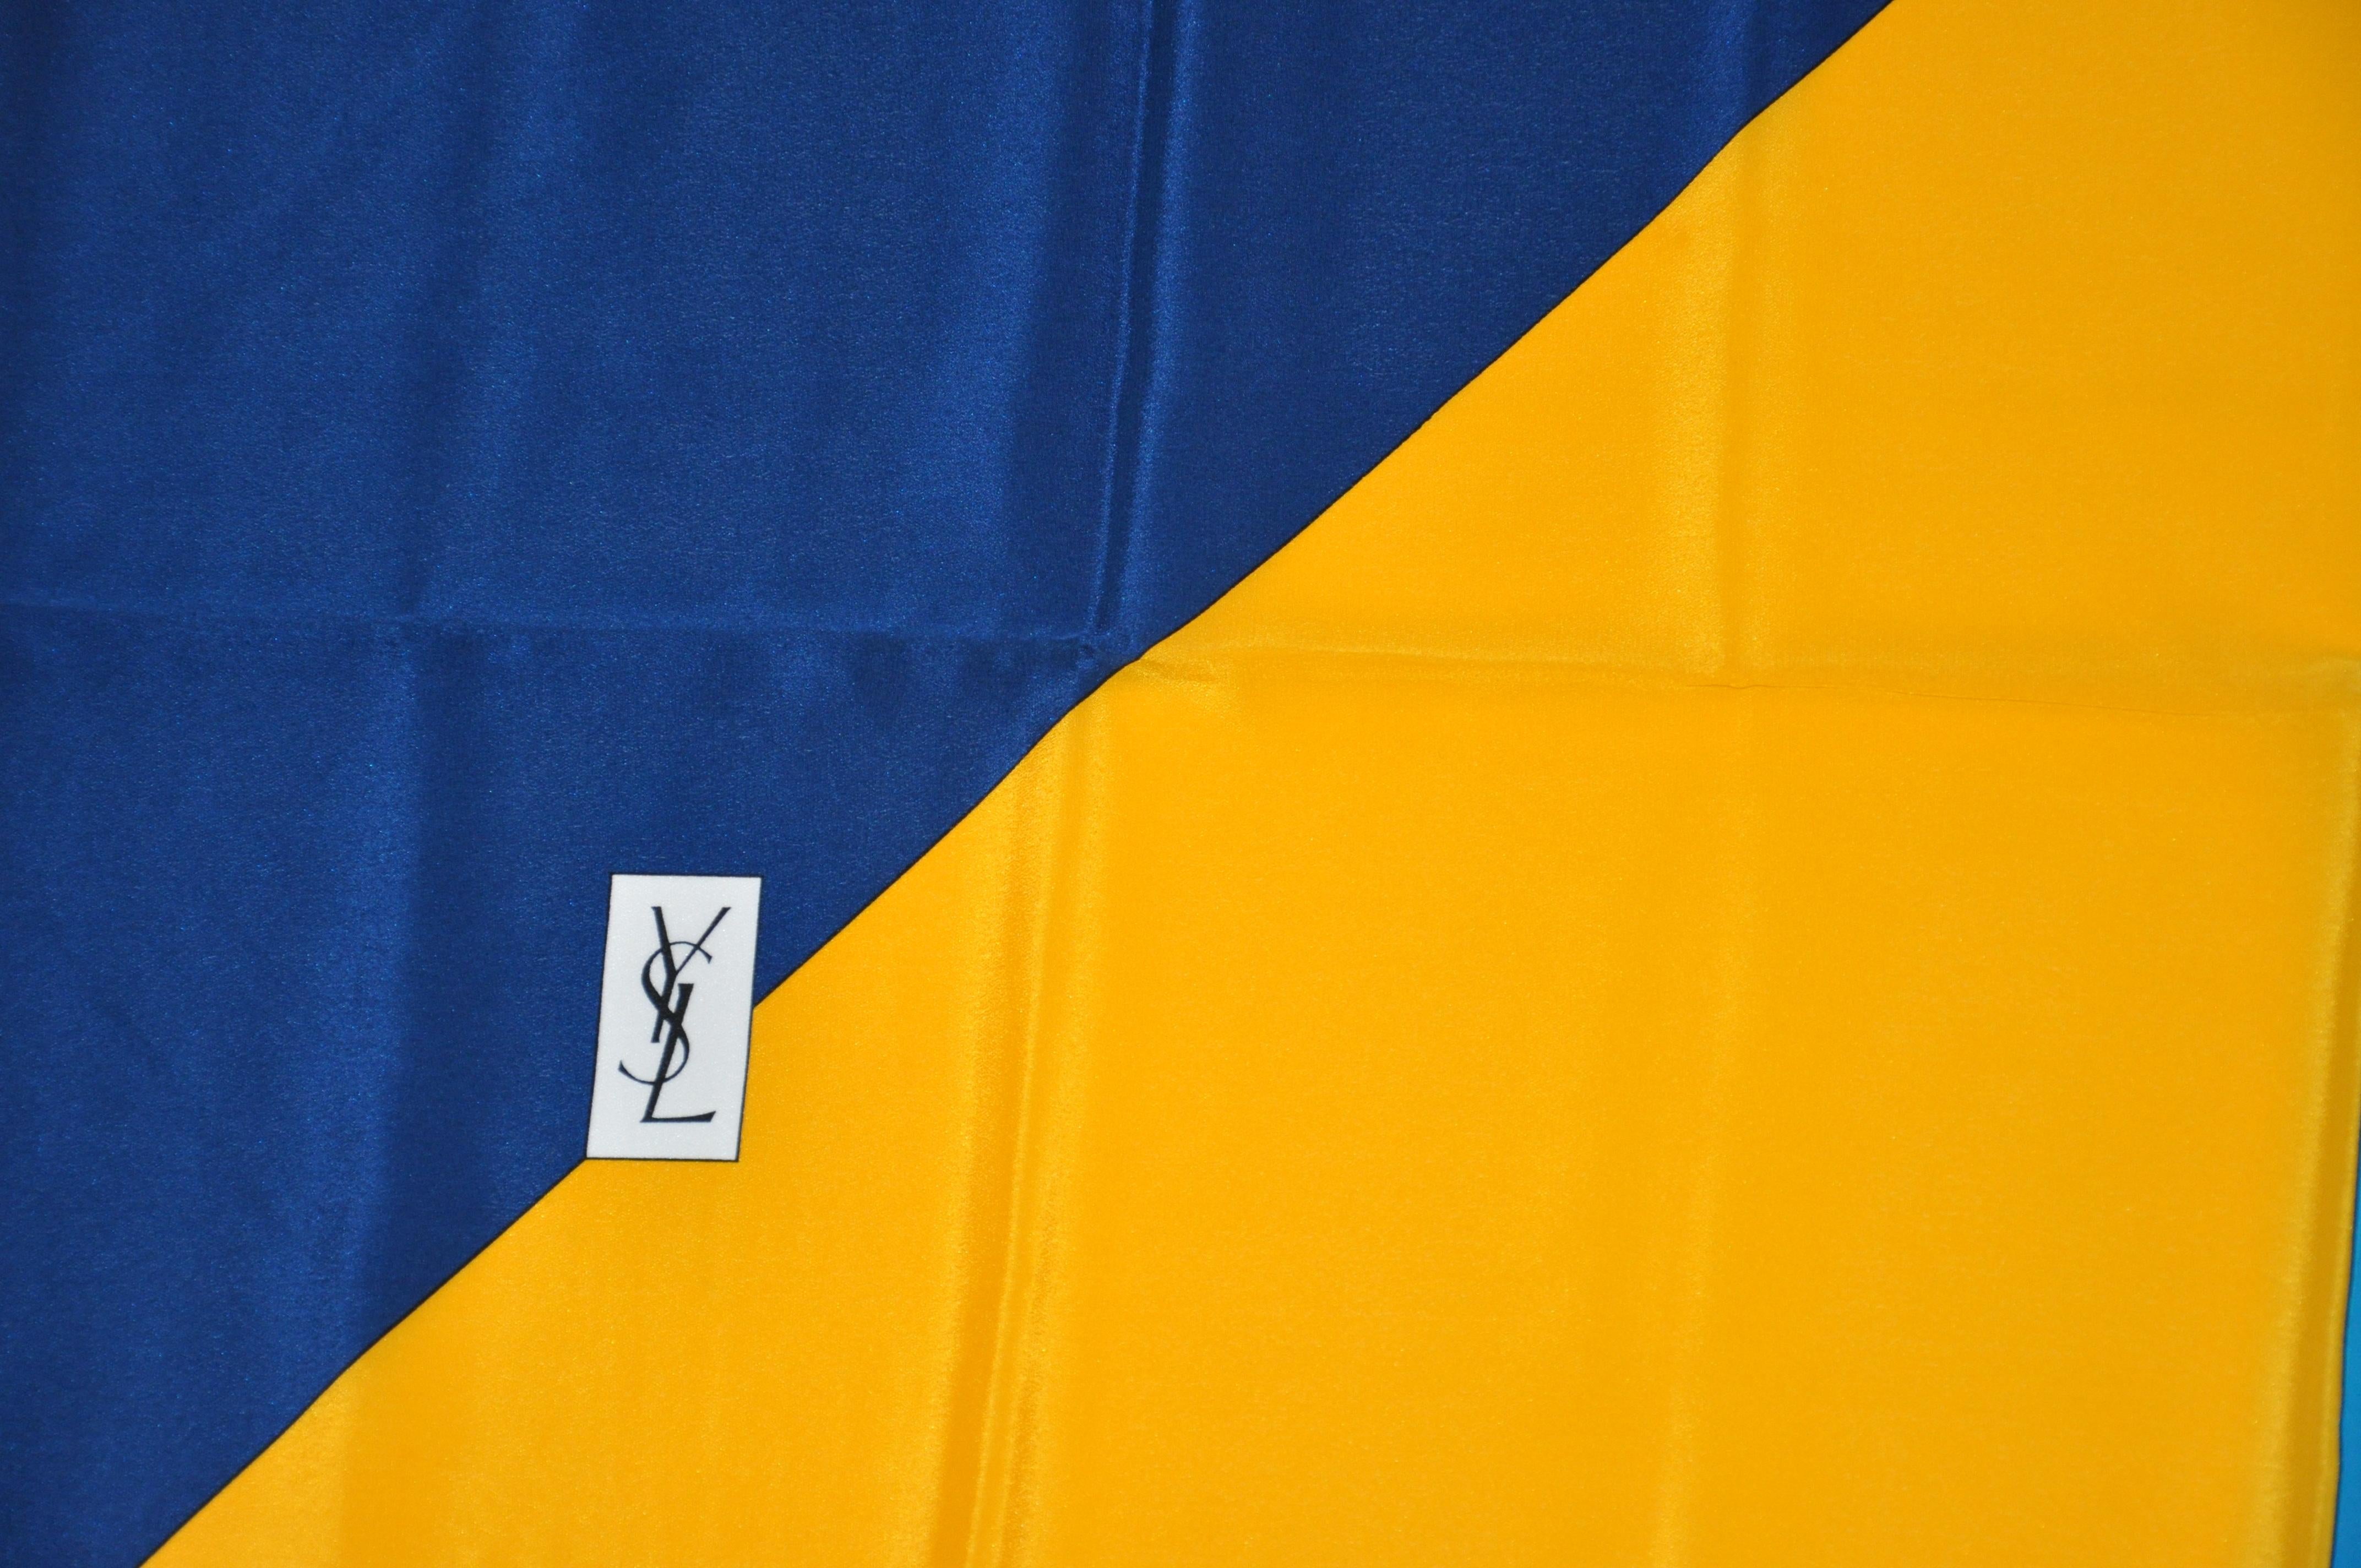        Der abstrakte Seidenschal aus Crêpe di Chine von Yves Saint Laurent zeichnet sich durch kräftige Farbtöne in Gelb, Türkis, Marineblau und italienischem Rot aus. Die Kanten sind von Hand gerollt und messen 35 mal 34 Zentimeter. Hergestellt in